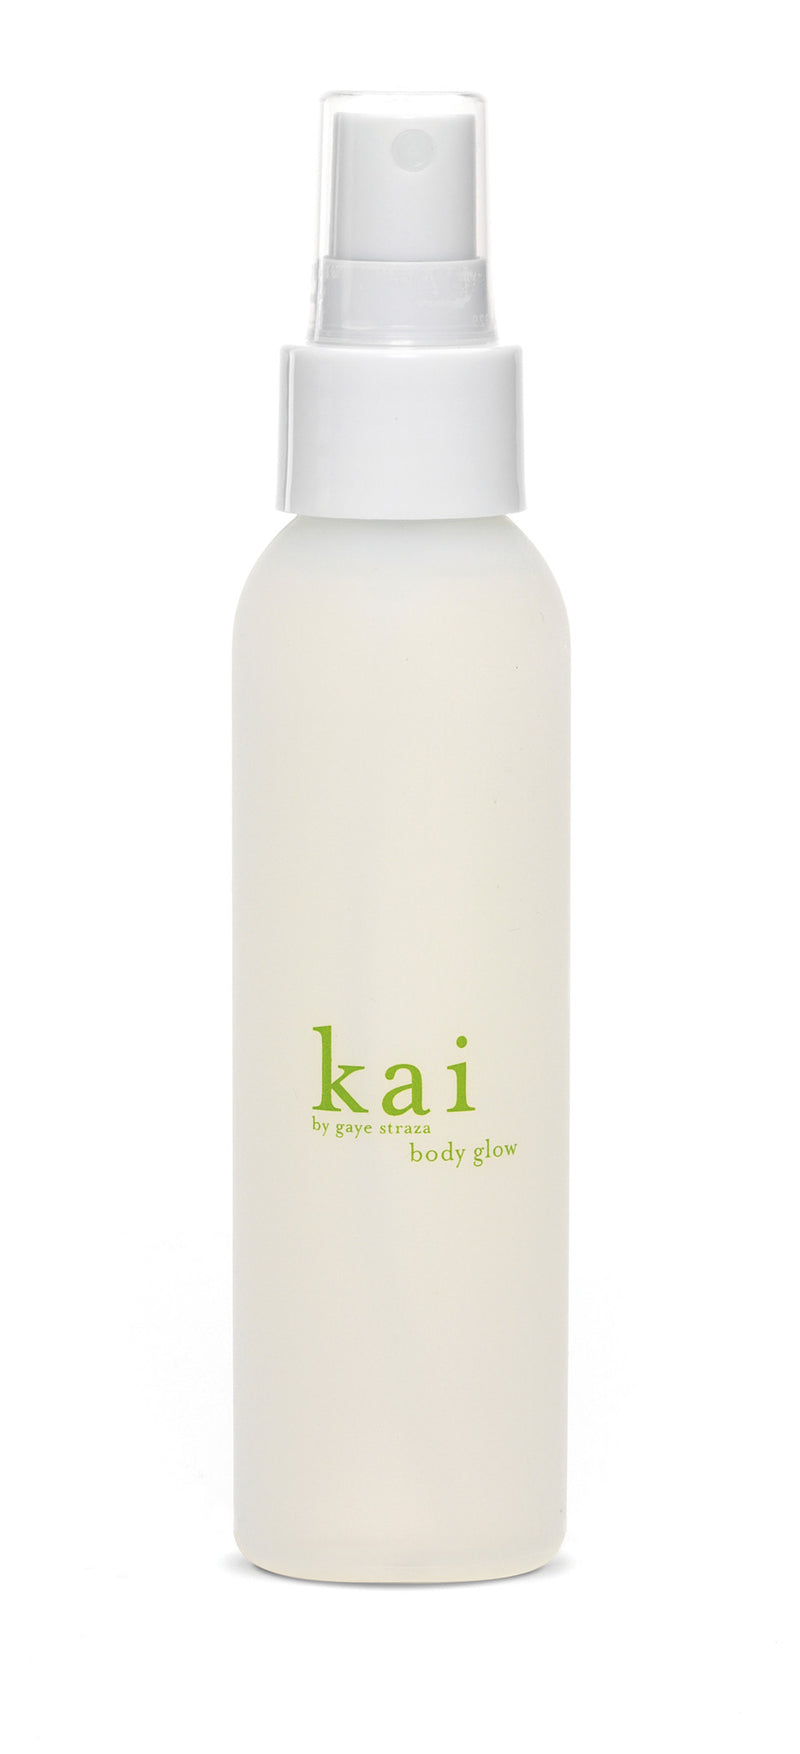 media image for kai body glow design by kai fragrance 1 219